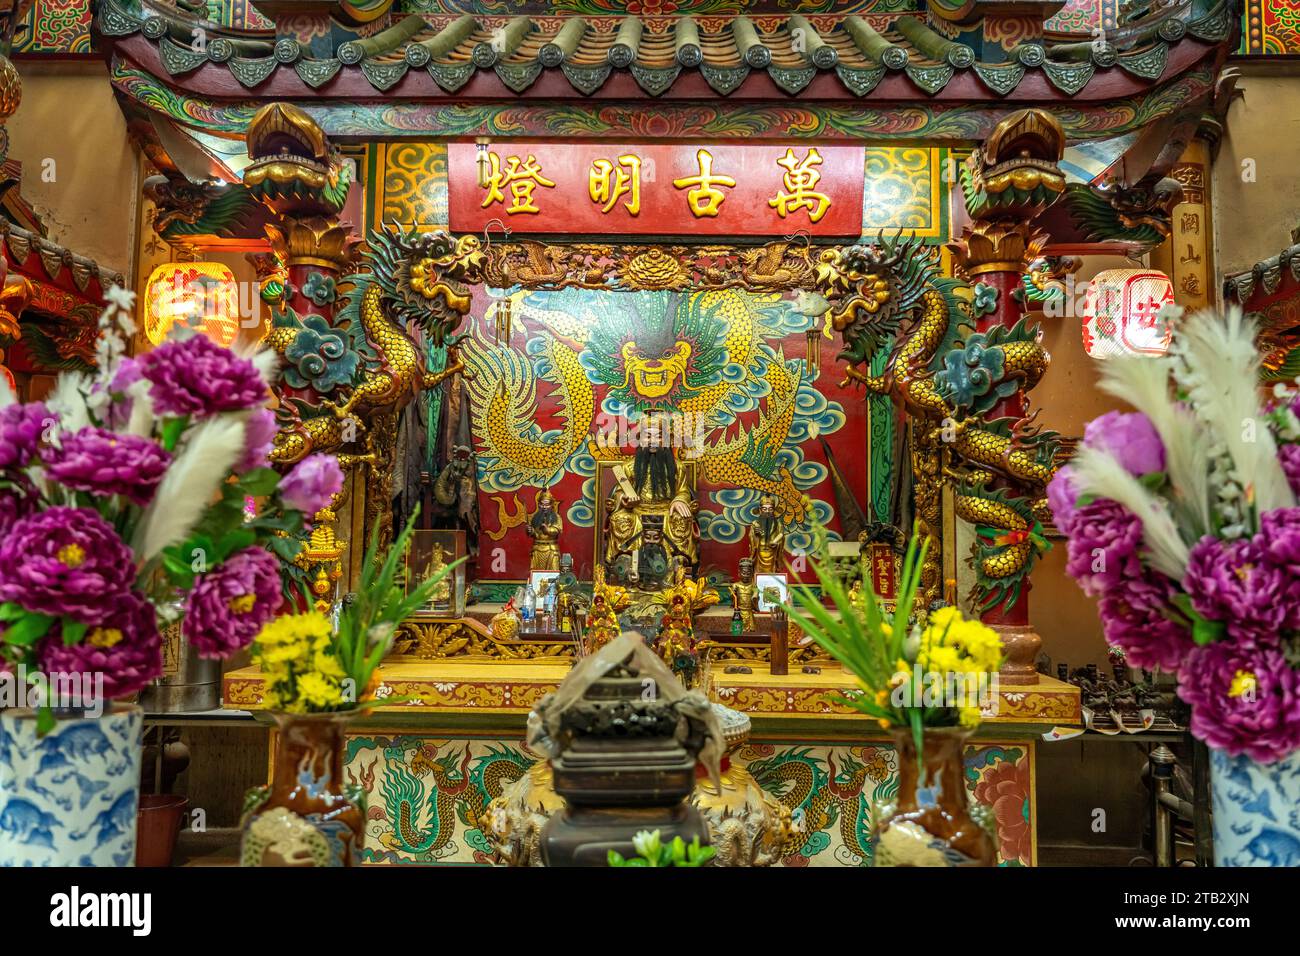 Der City Pillar Shrine im chinesischem Stil in Trat, Thailand, Asien   |  The Chinese style City Pillar Shrine in Trat, Thailand, Asia Stock Photo